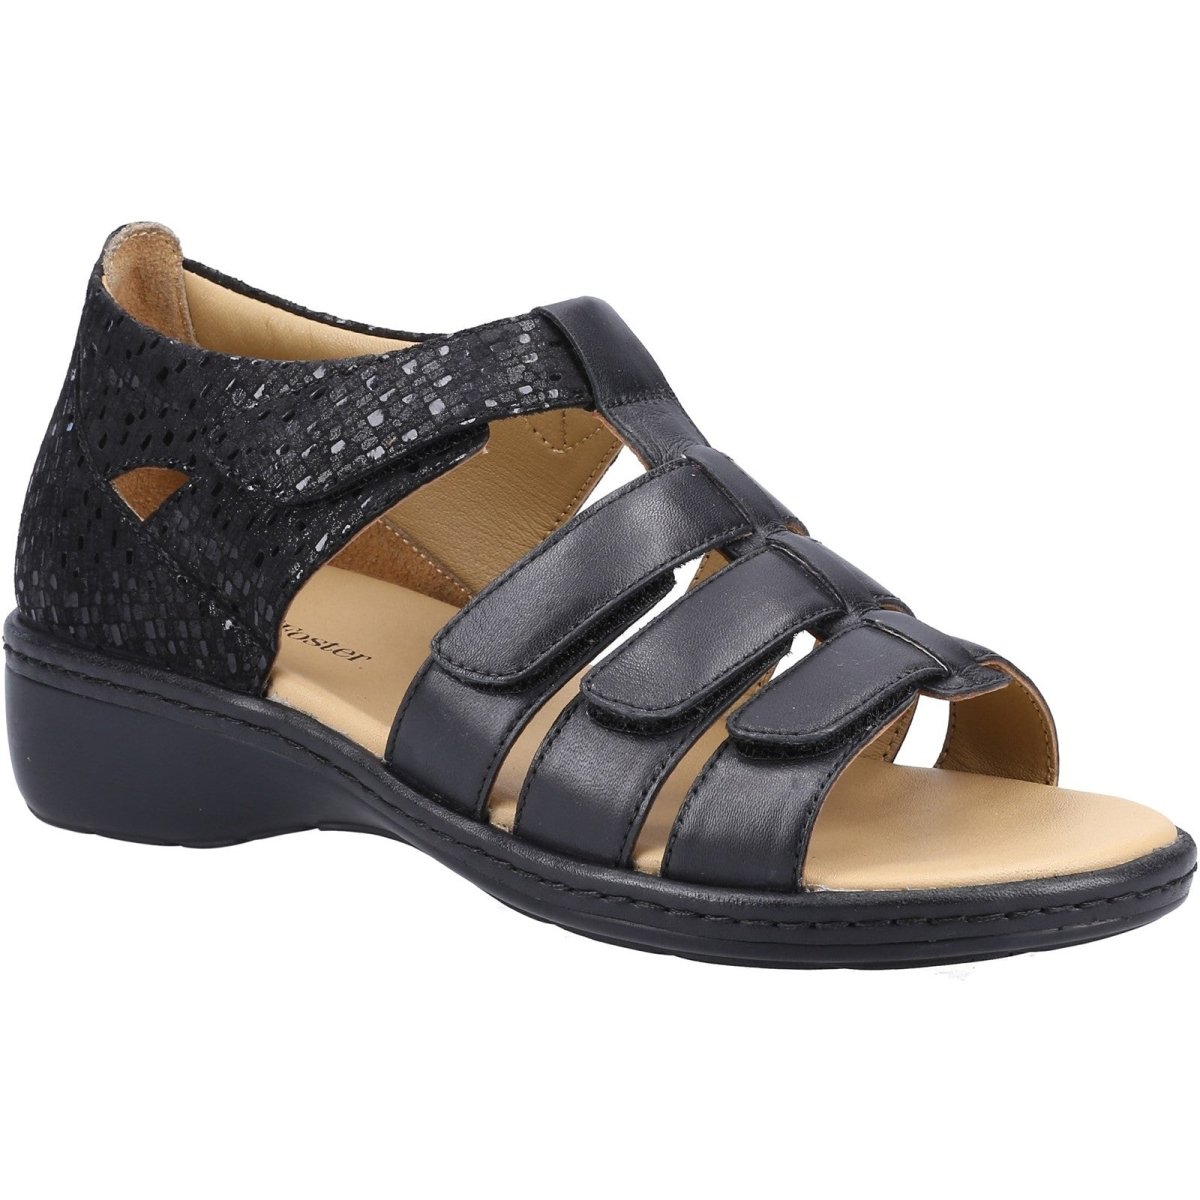 Fleet & Foster Julie Ladies Touch-Fastening Summer Sandals - Shoe Store Direct